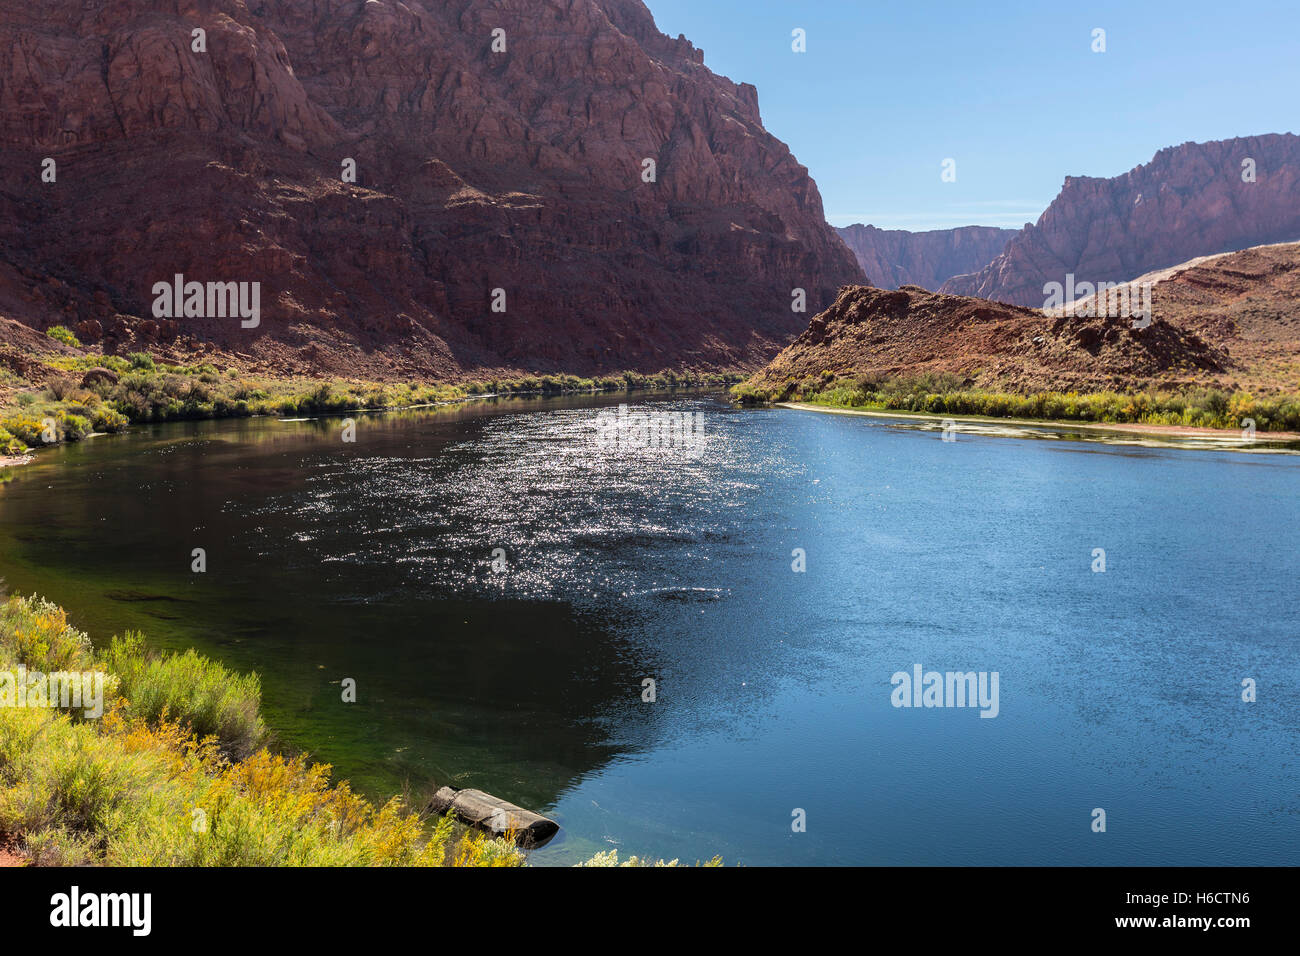 Colorado River in der Nähe von Lees Ferry bei Glen Canyon National Recreation Area im nördlichen Arizona. Stockfoto